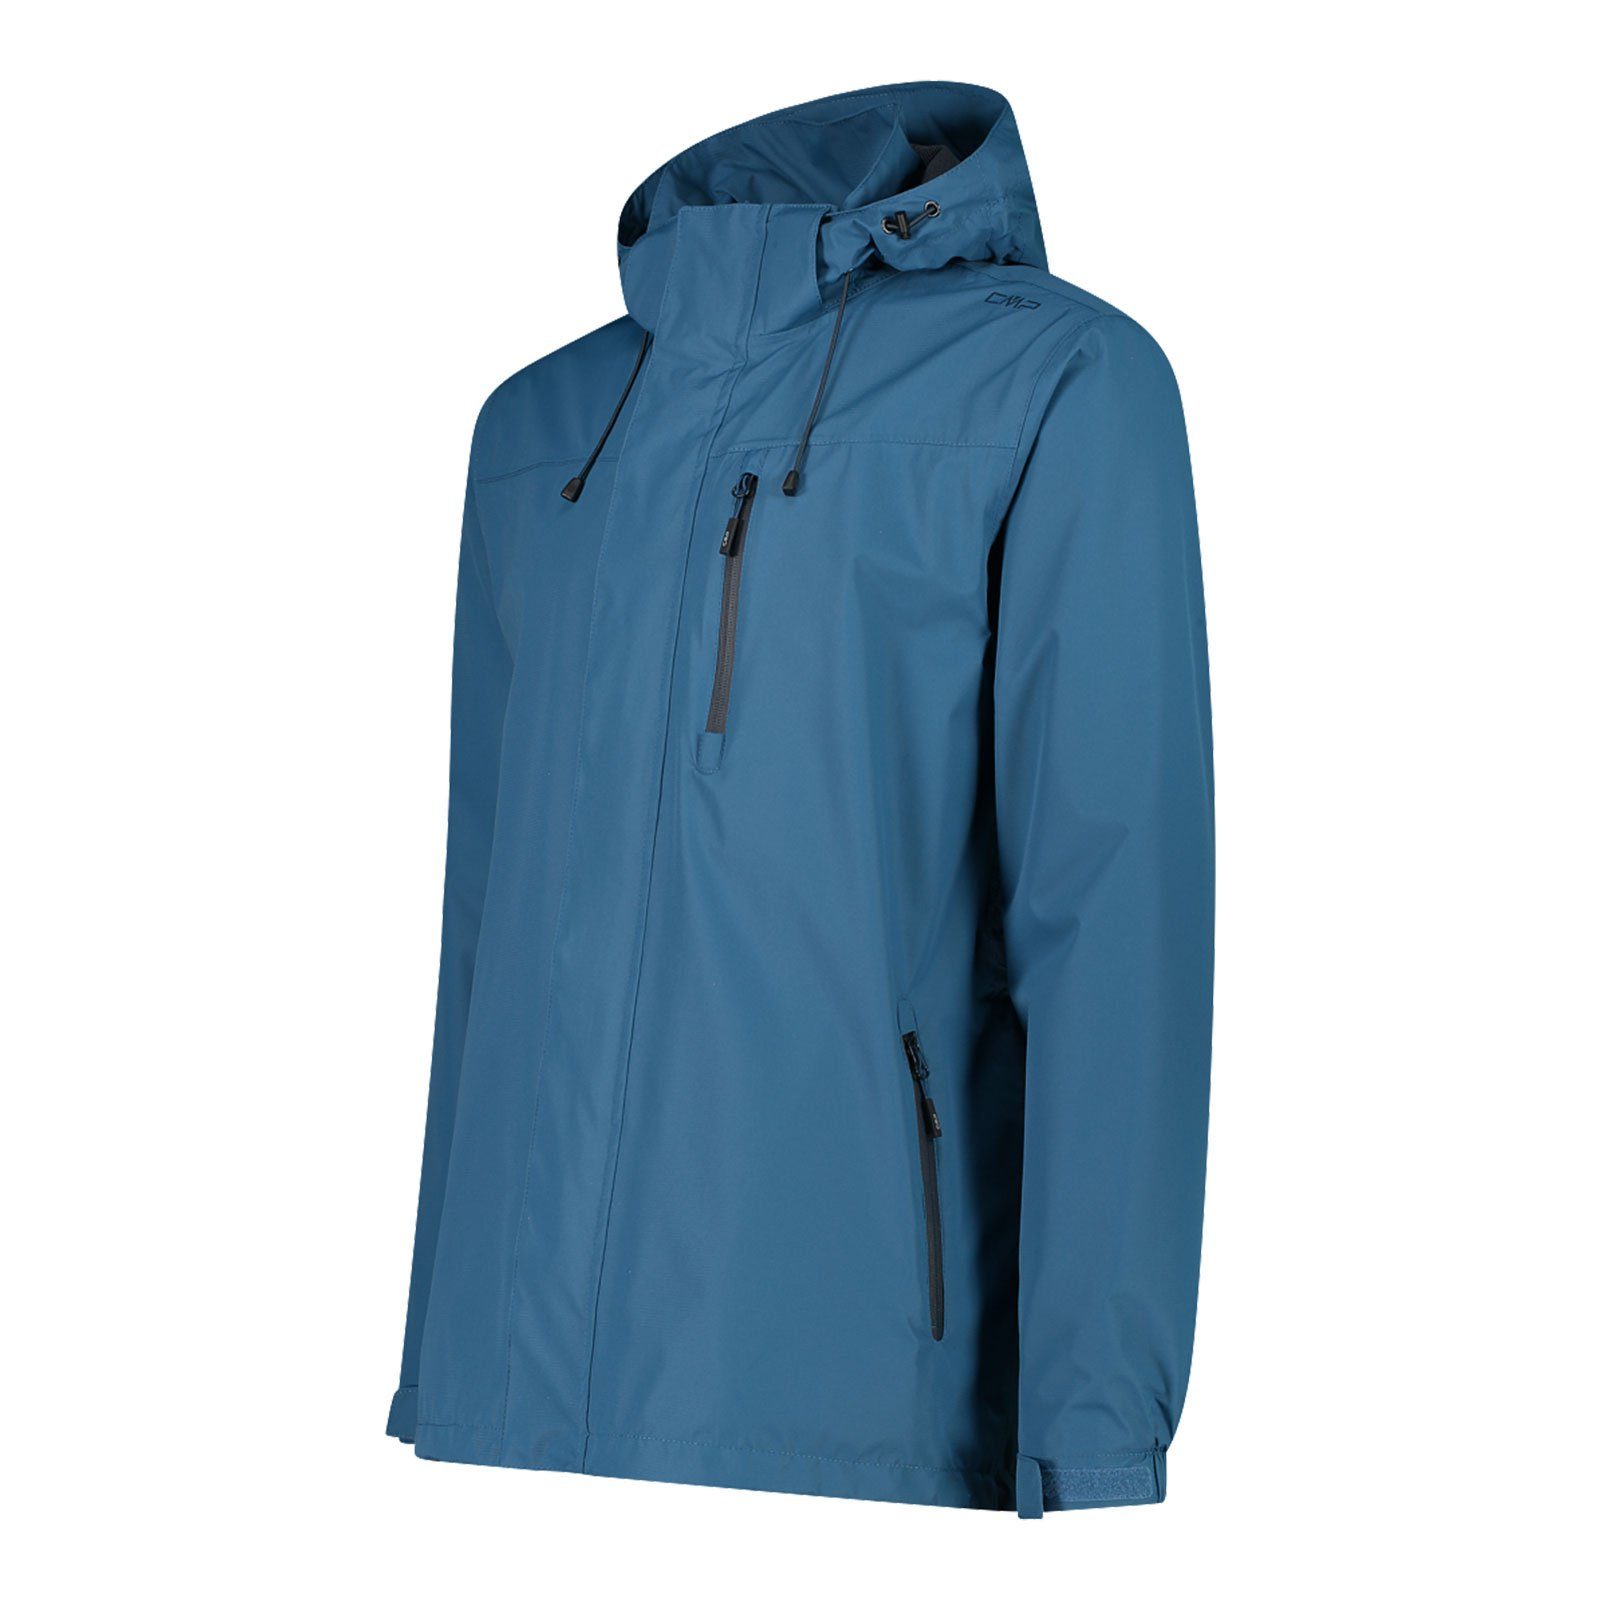 mit Verstauen dusty M879 der Regenjacke Hood Jacke Zip Packtasche zum Man CMP integrierter blue Jacket